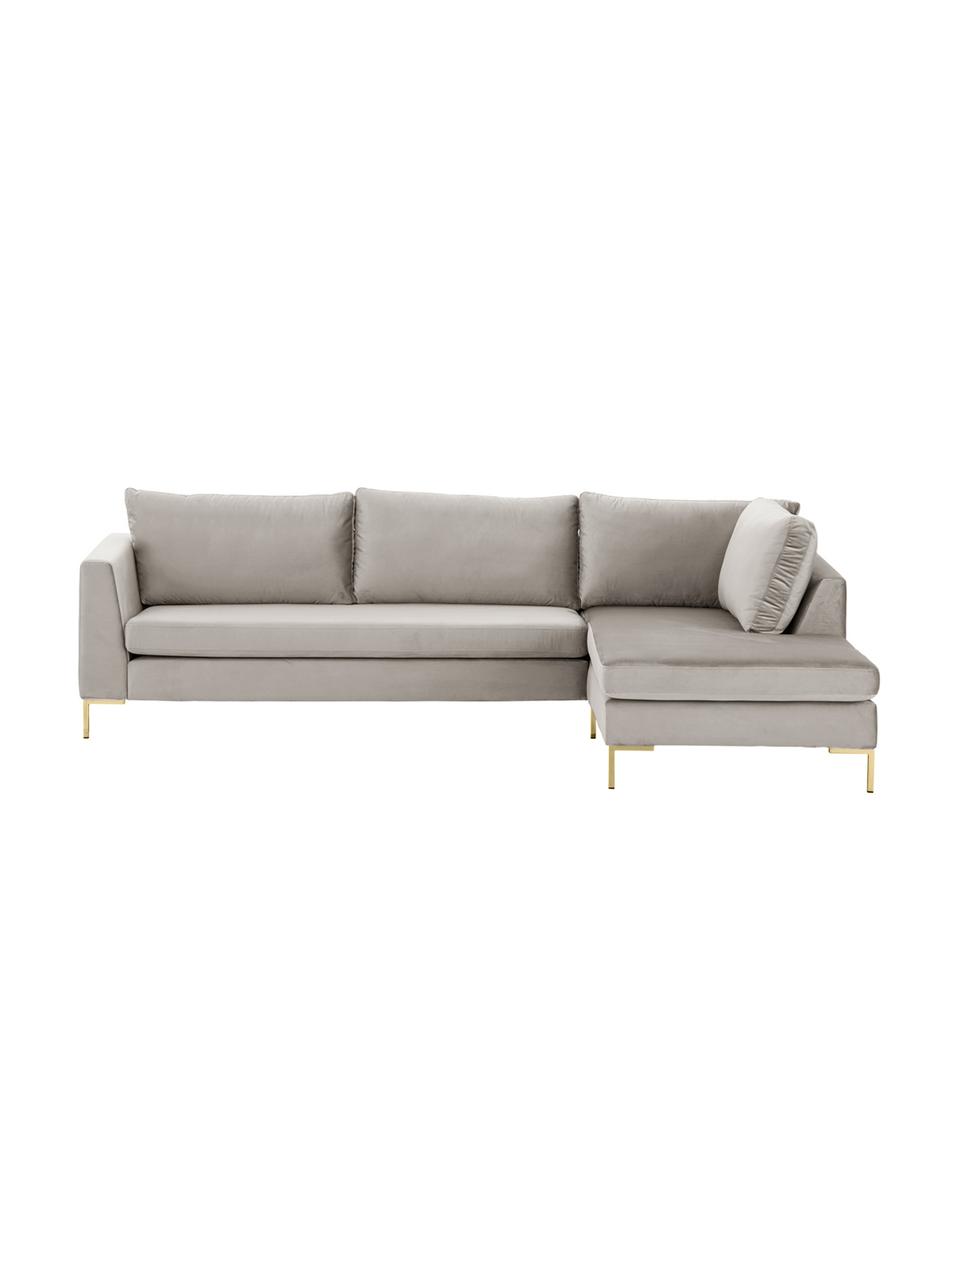 Sofa narożna z aksamitu z metalowymi nogami Luna, Tapicerka: aksamit (poliester) Dzięk, Nogi: metal galwanizowany, Ciemnobeżowy aksamit, złoty, S 280 x G 184 cm, prawostronna